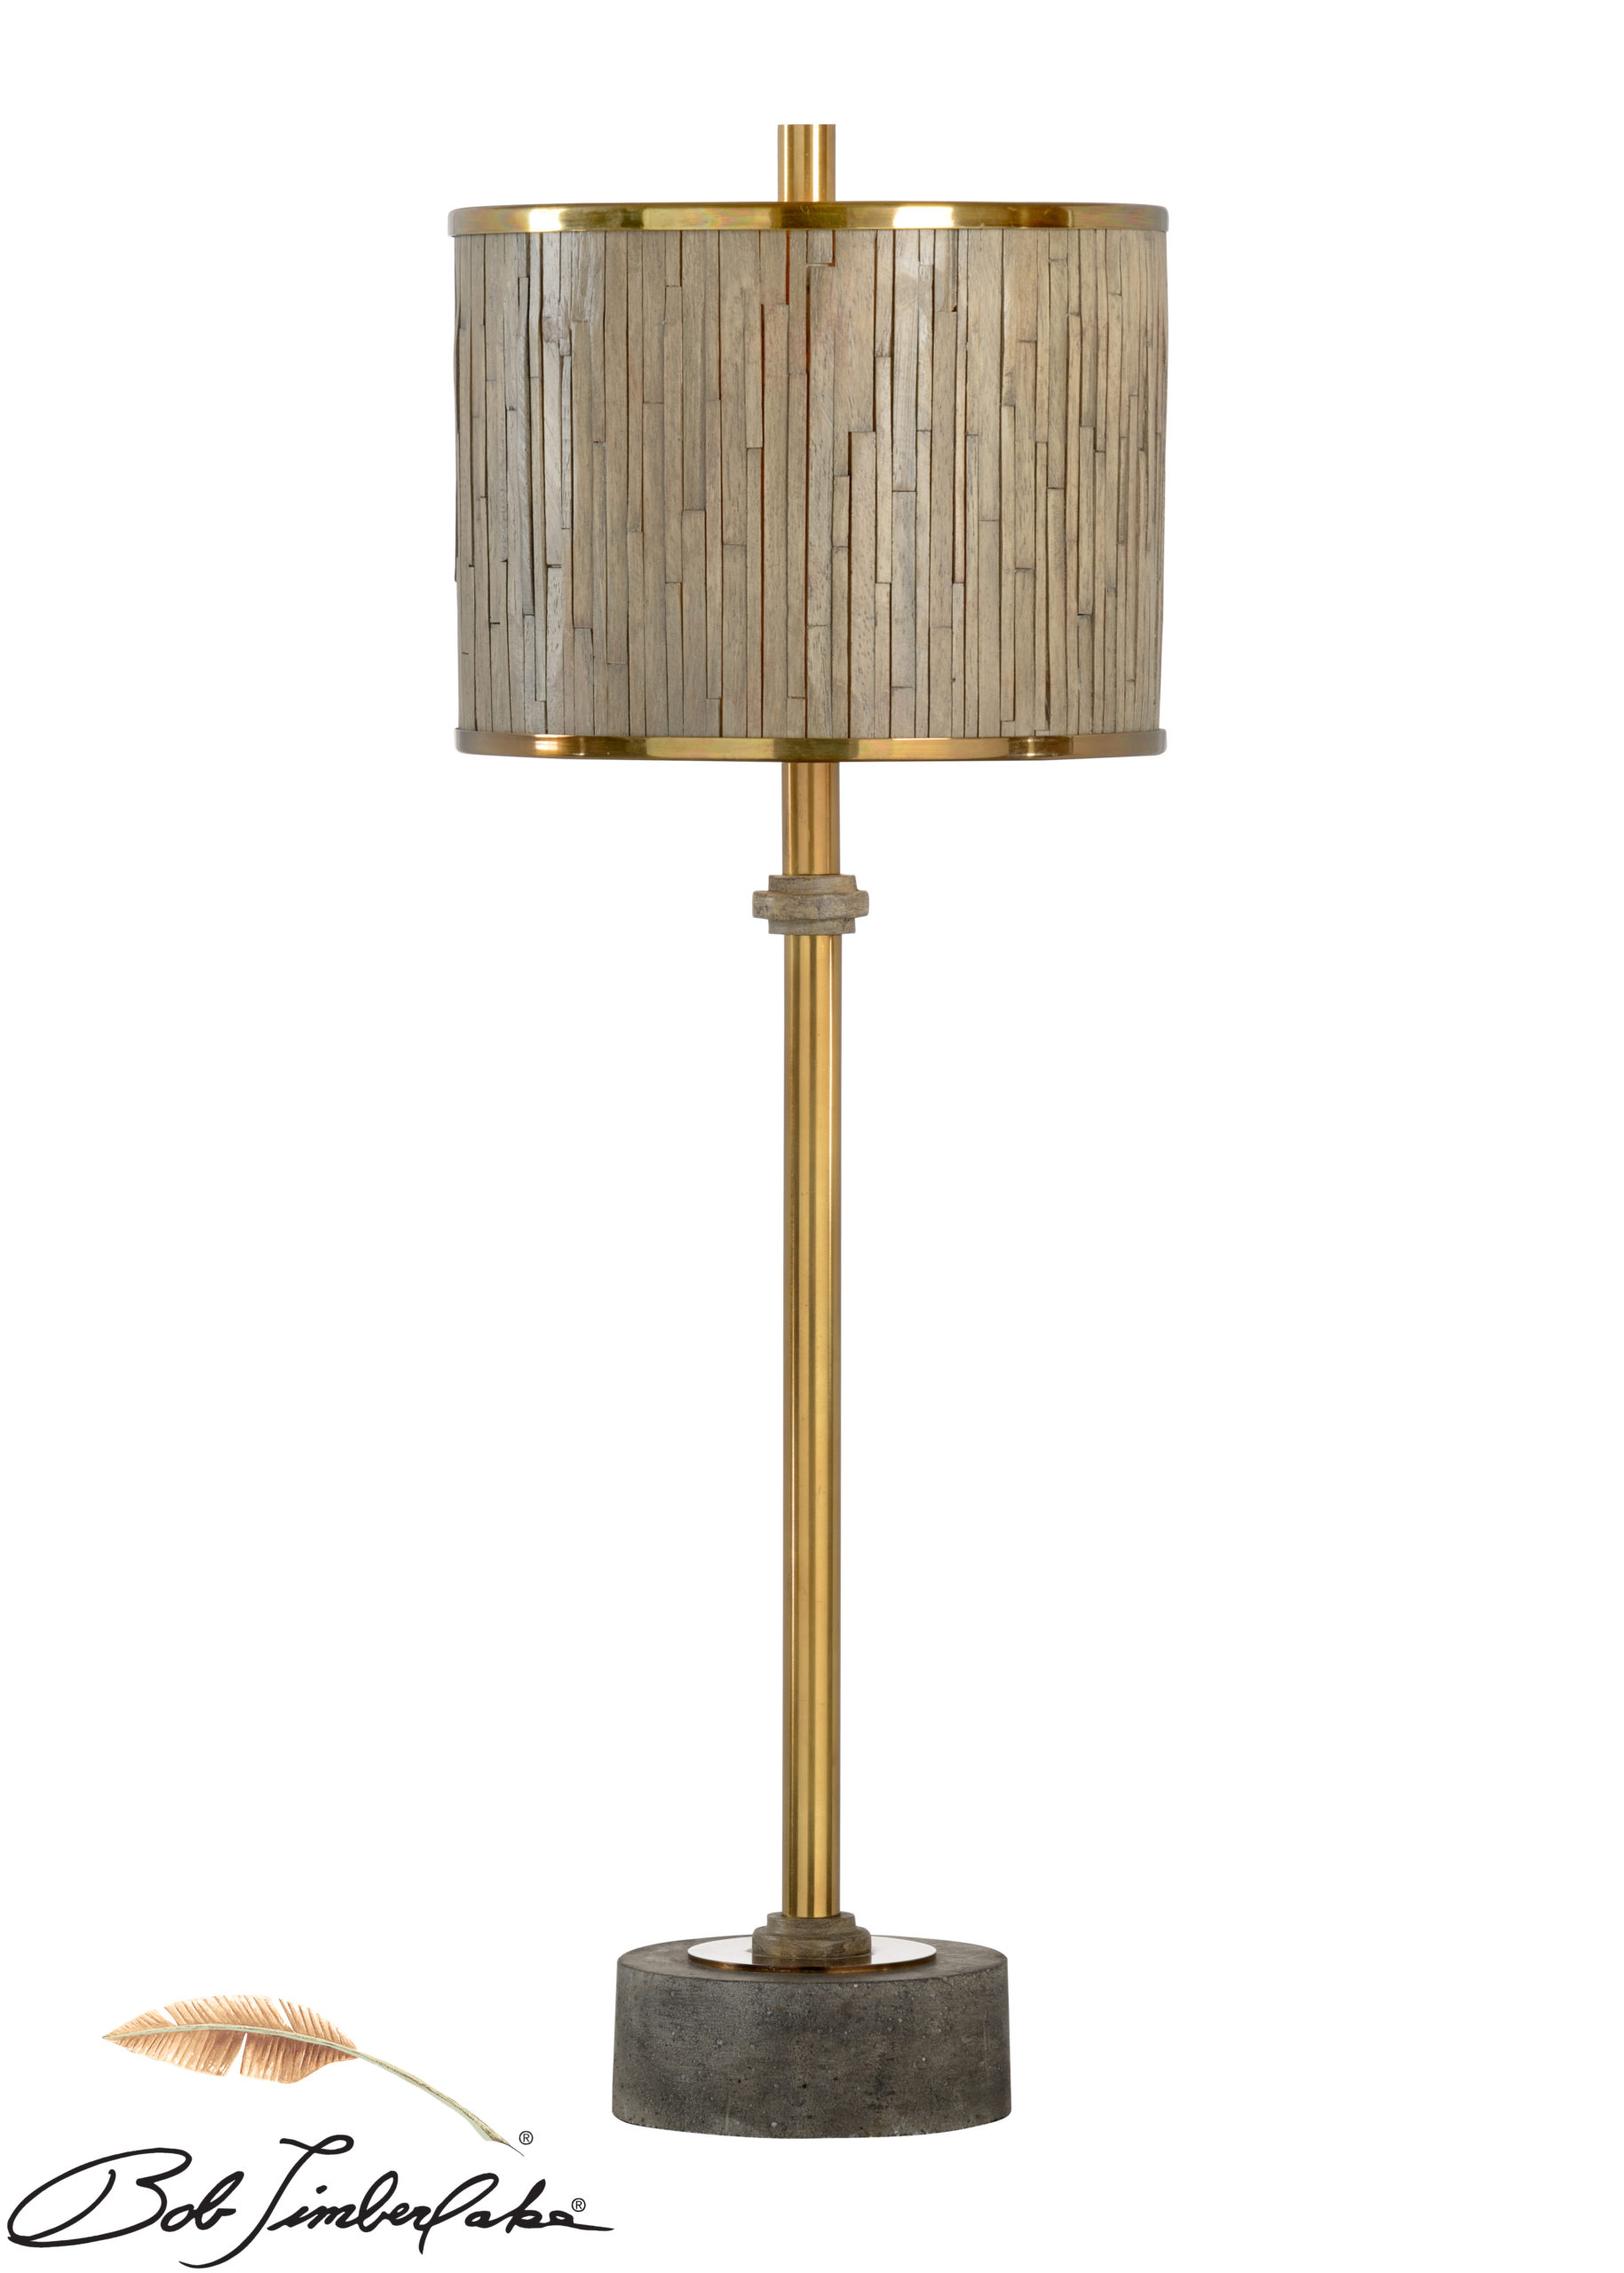 Currituck Lamp